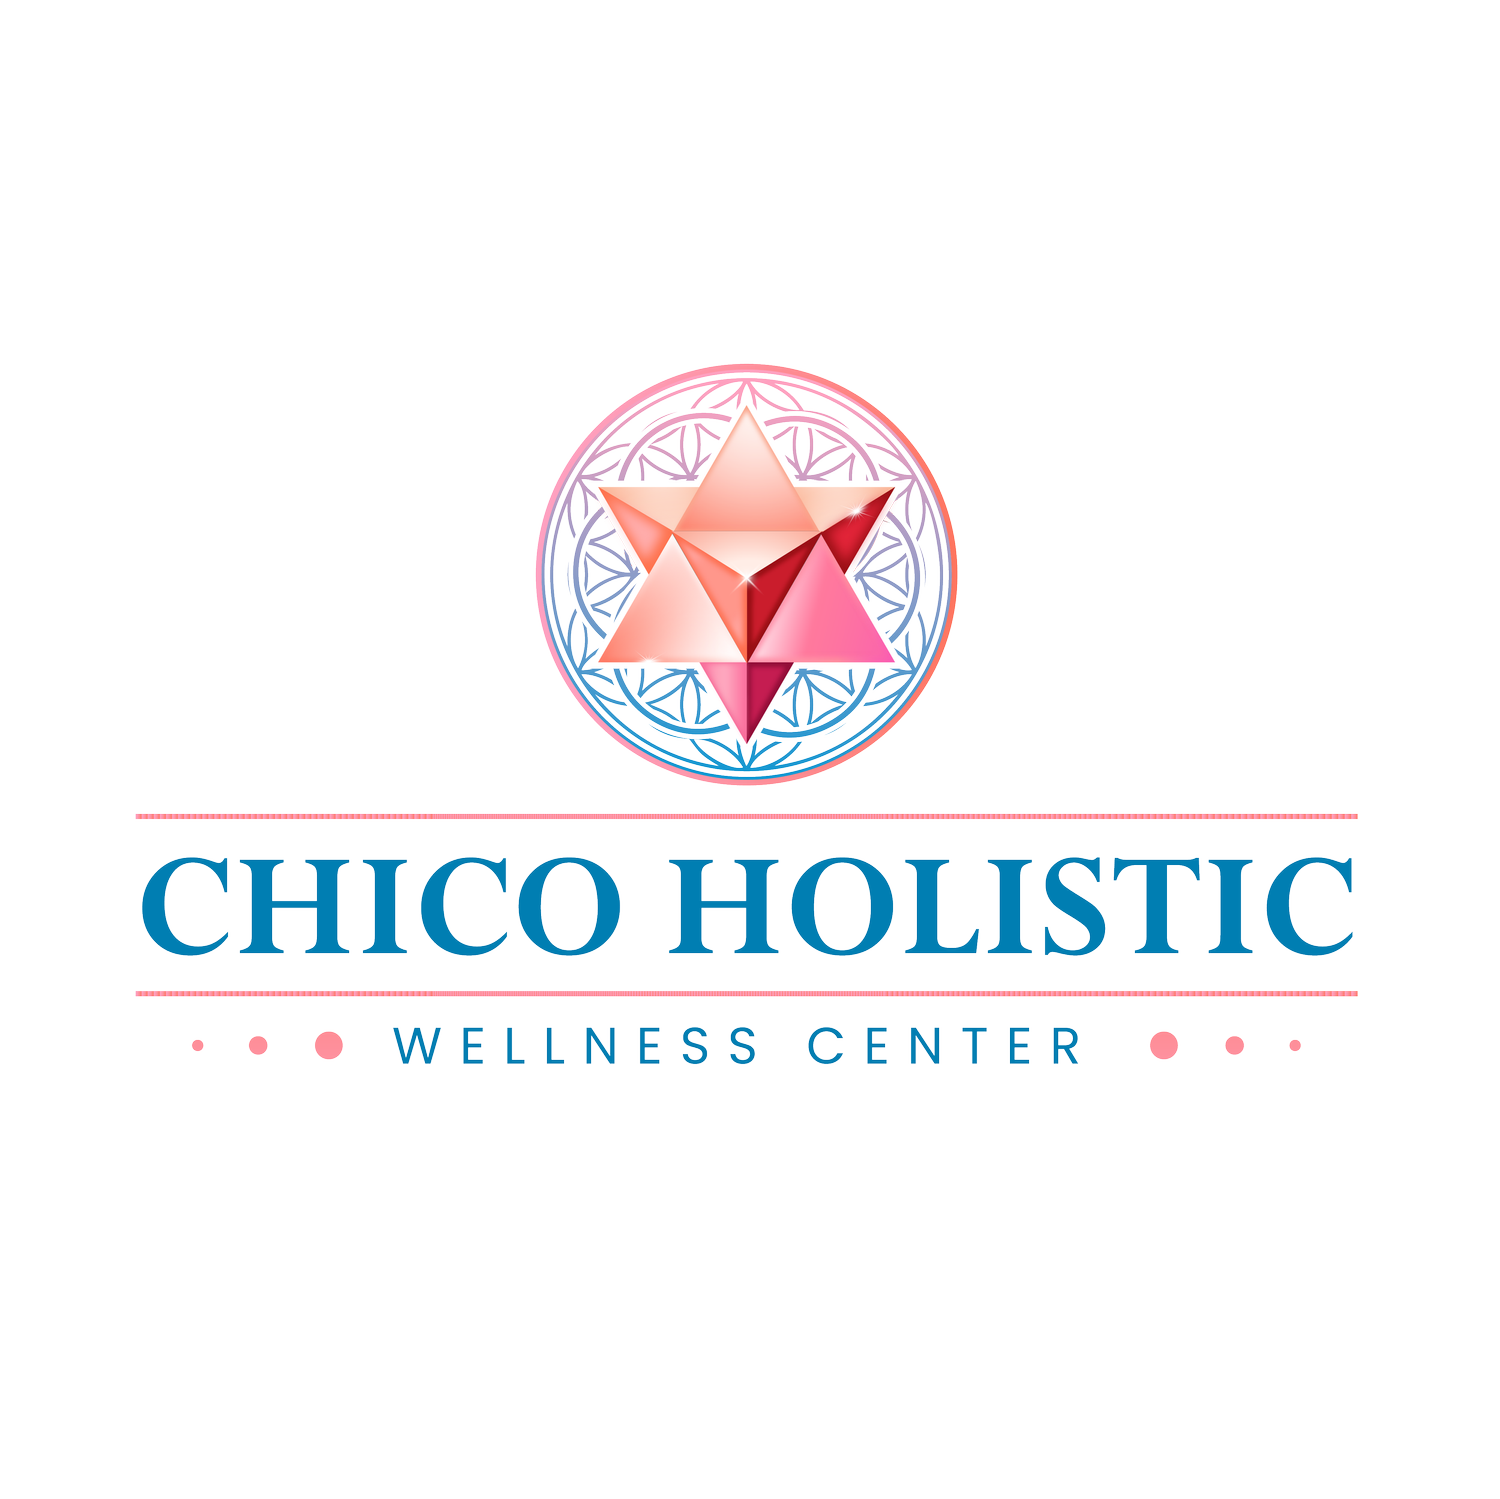 Chico Holistic Wellness Center